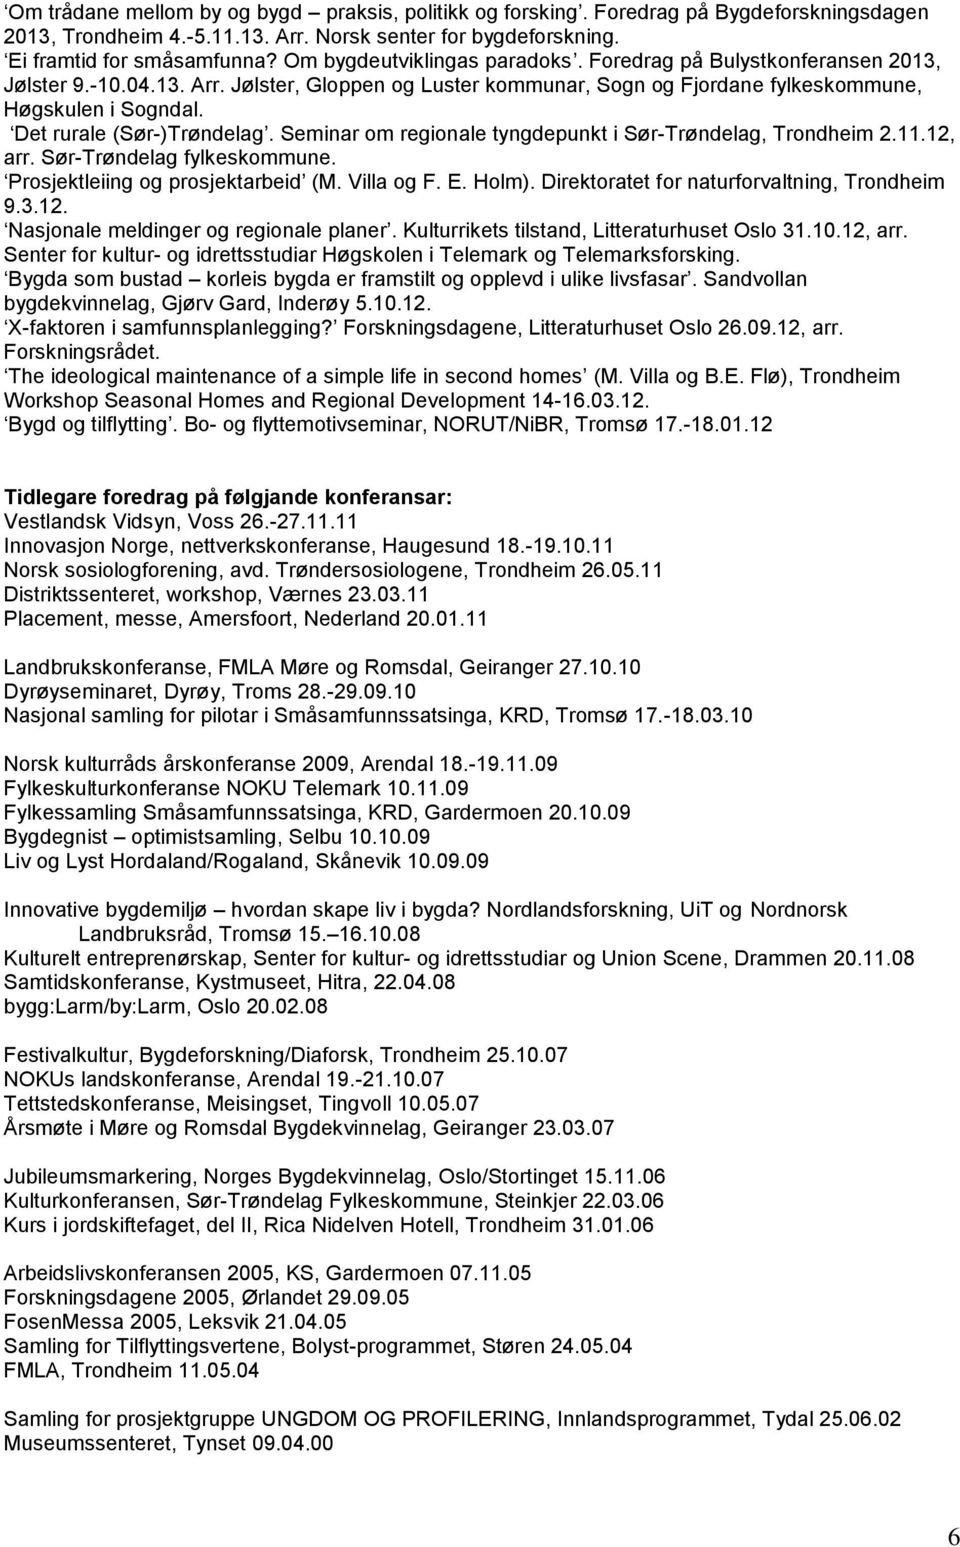 Seminar om regionale tyngdepunkt i Sør-Trøndelag, Trondheim 2.11.12, arr. Sør-Trøndelag fylkeskommune. Prosjektleiing og prosjektarbeid (M. Villa og F. E. Holm).